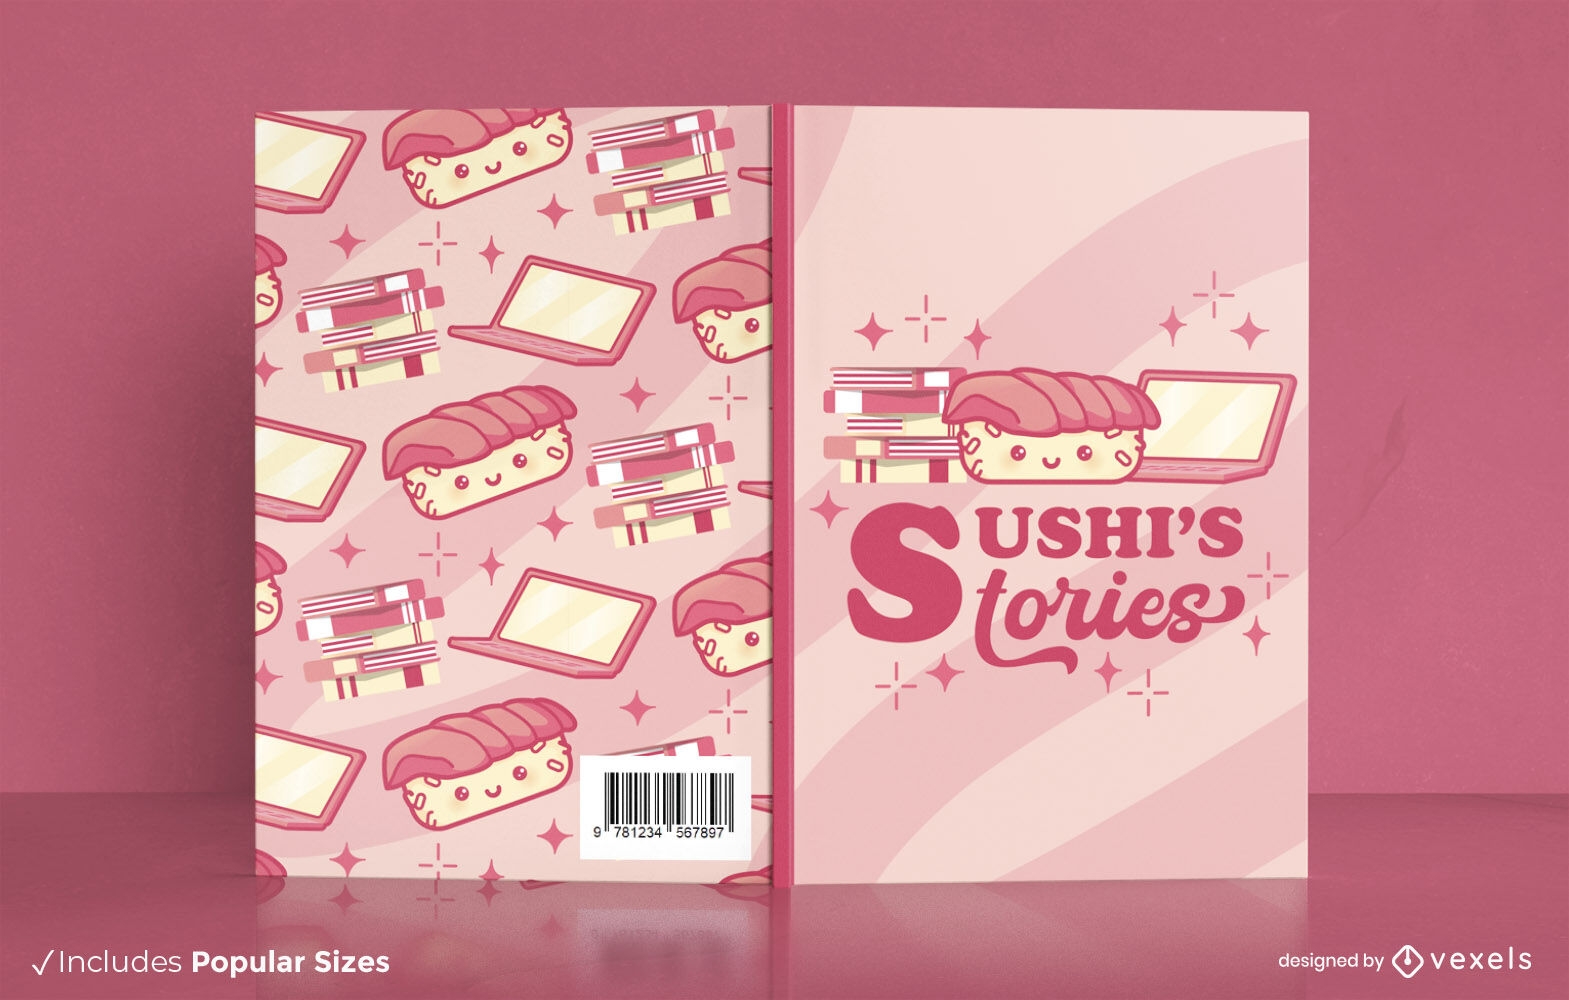 Dise?o de portada de libro de historias de sushi.